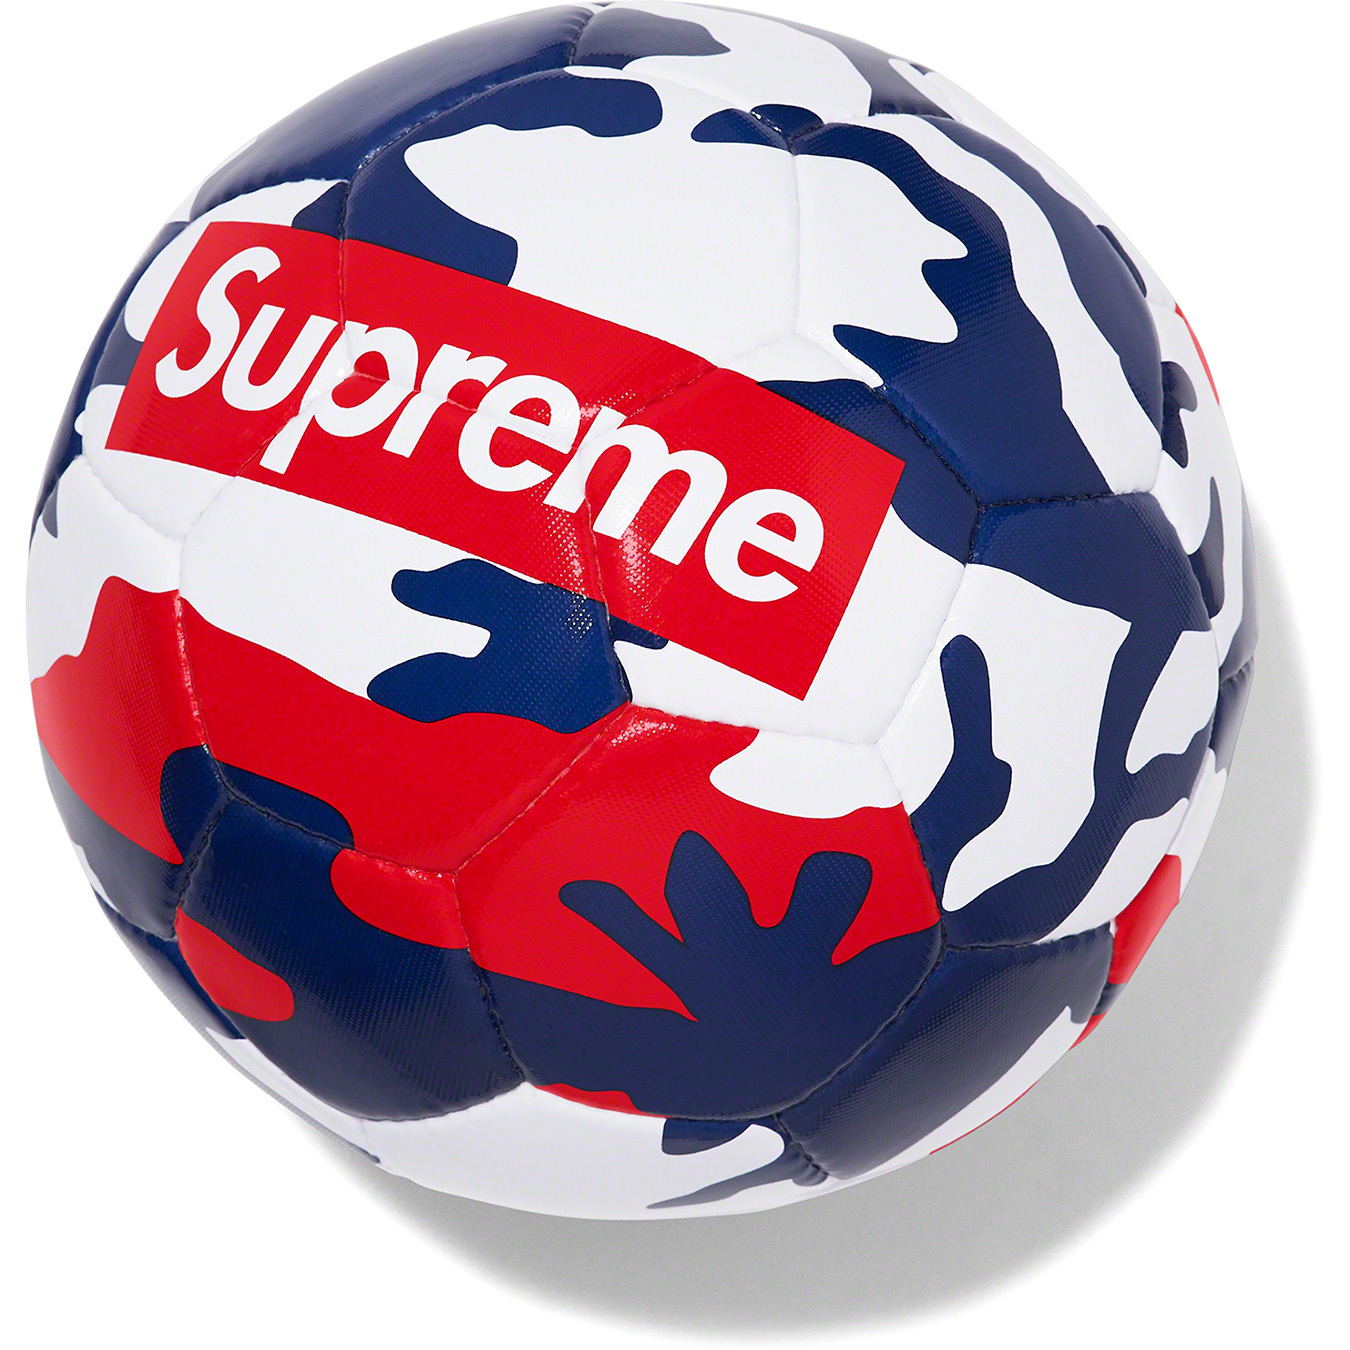 Supreme®/Umbro Soccer Ball | Supreme 22ss